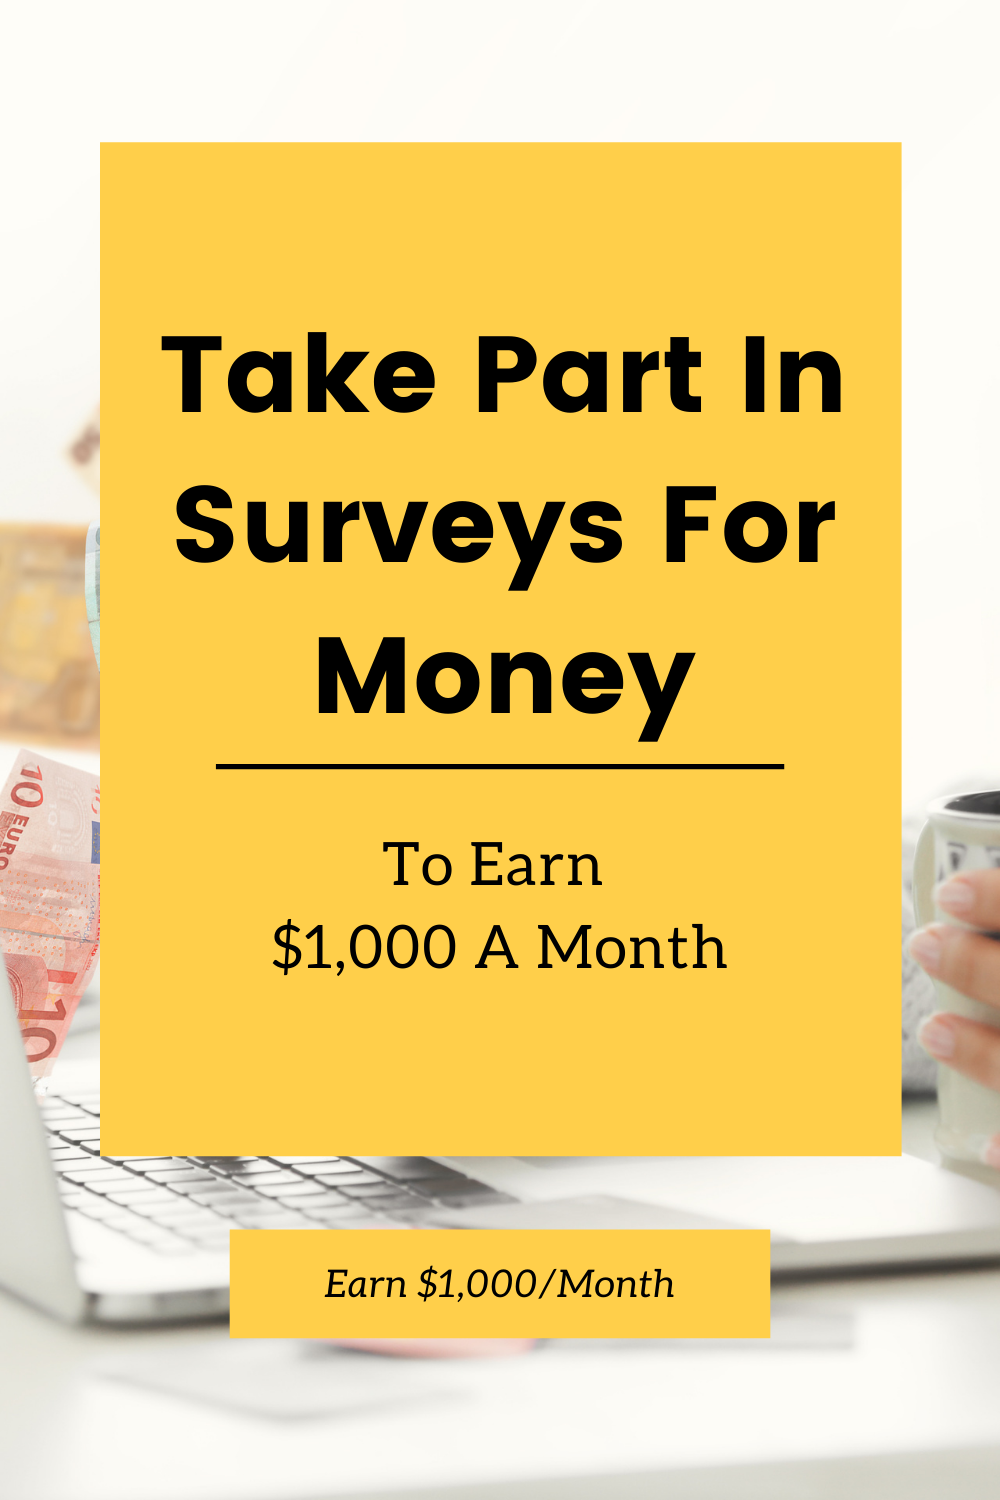 Take part in surveys for money